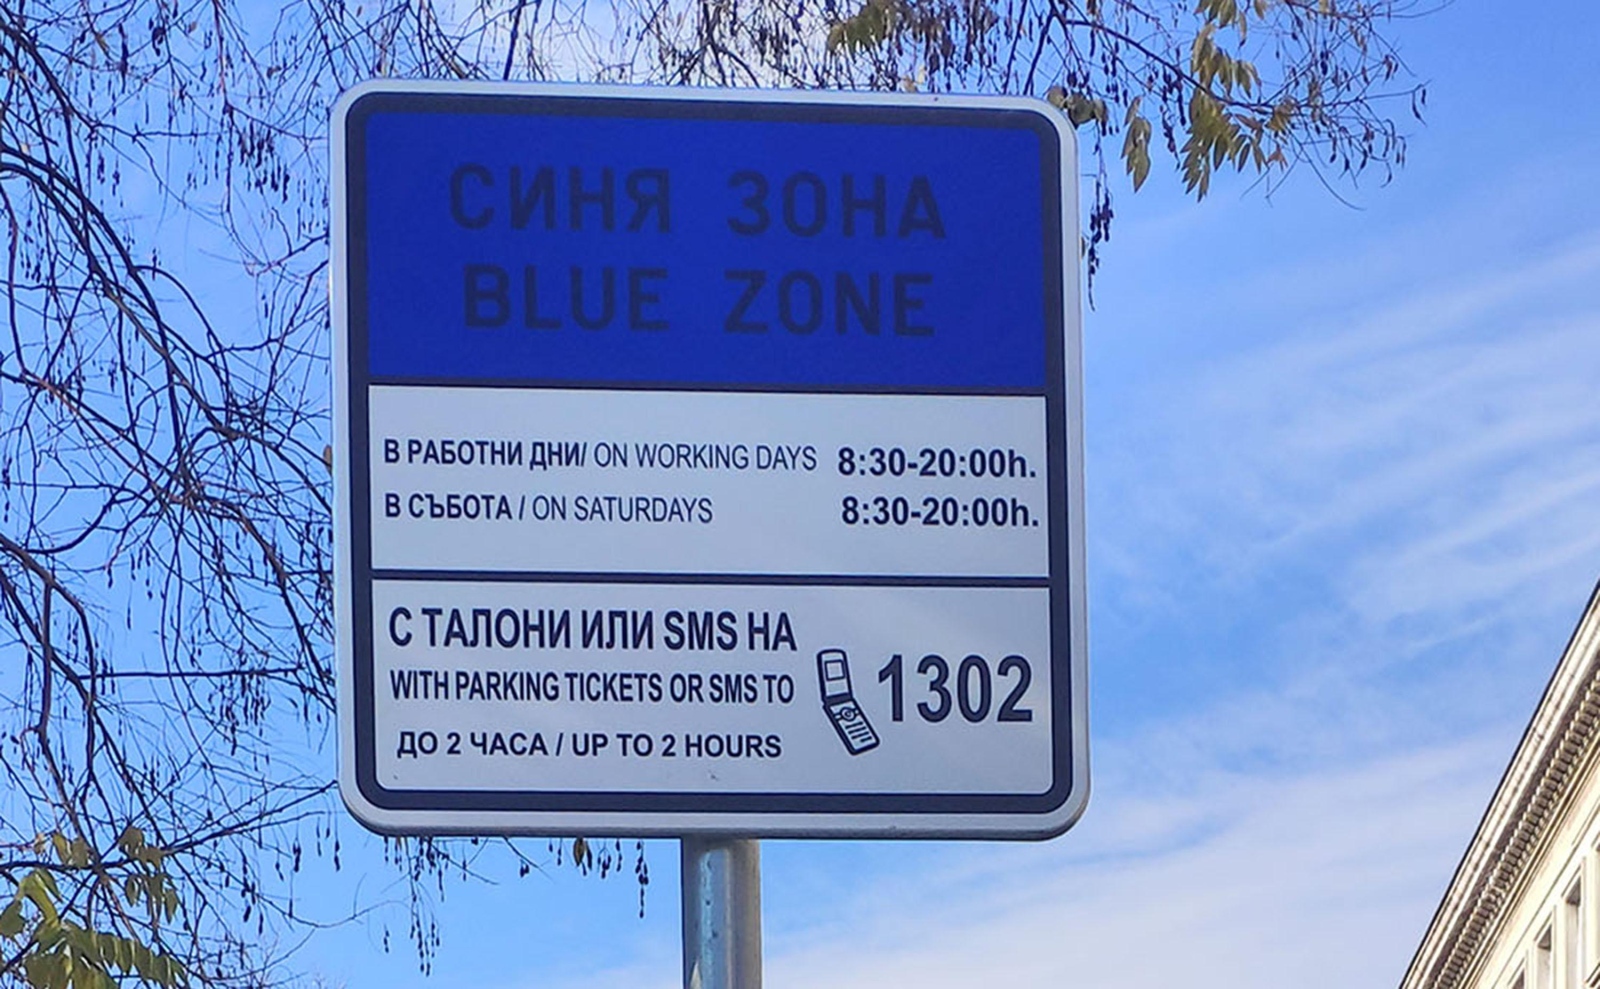 Общински съветници от Спаси София предлагат синя зона в столицата